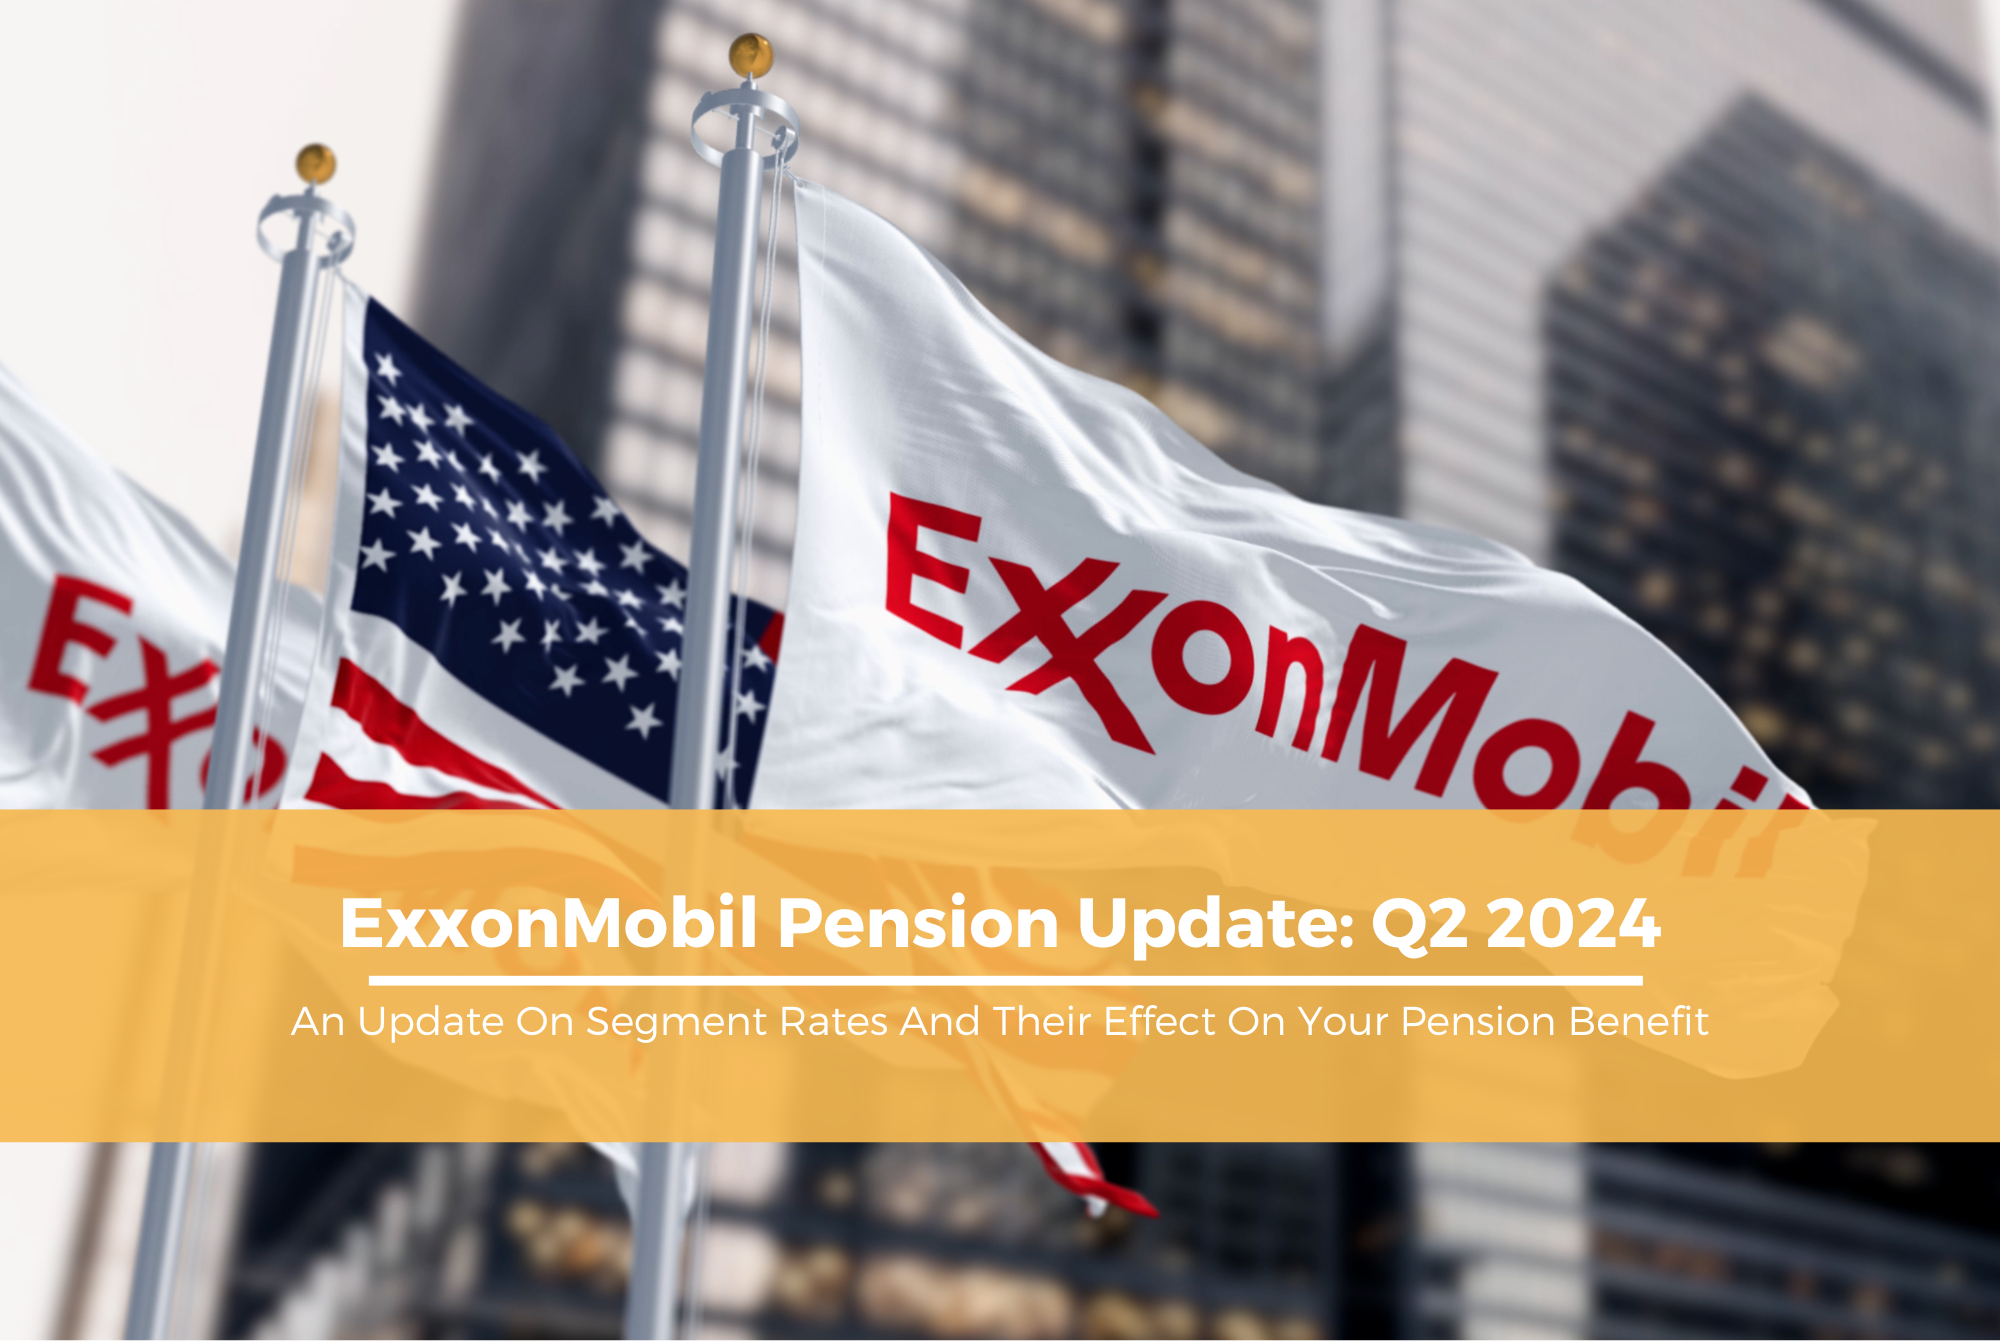 ExxonMobil Pension Update 2024